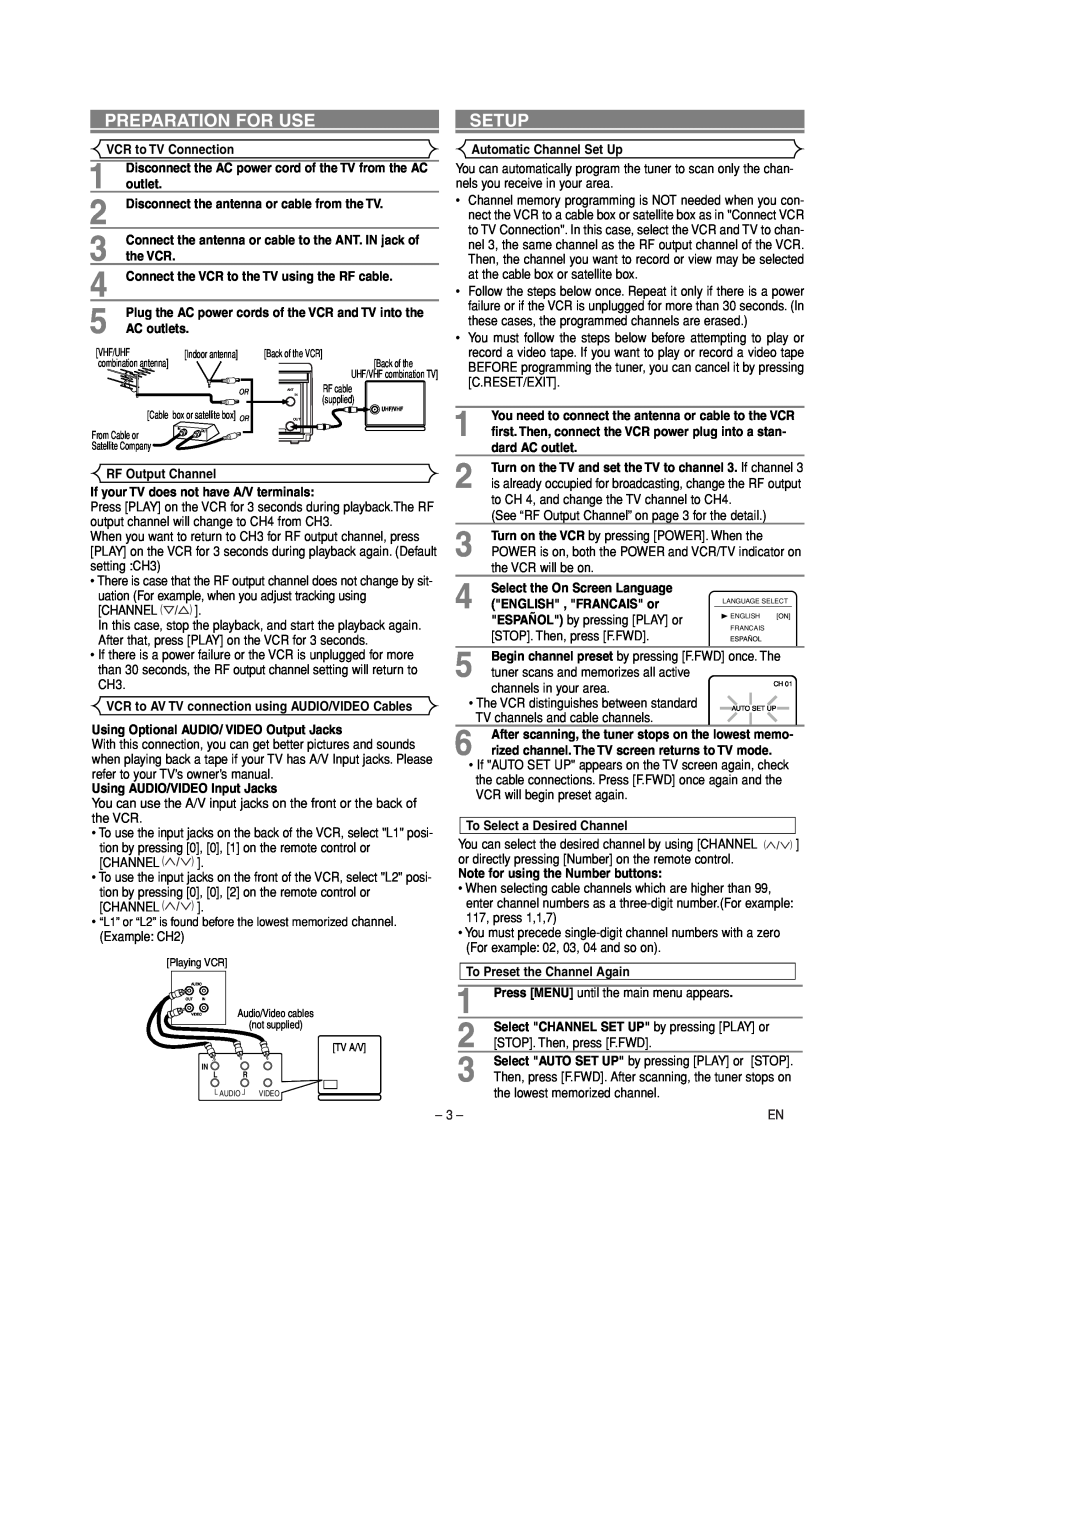 Symphonic SL240D owner manual Preparation For Use, Setup 